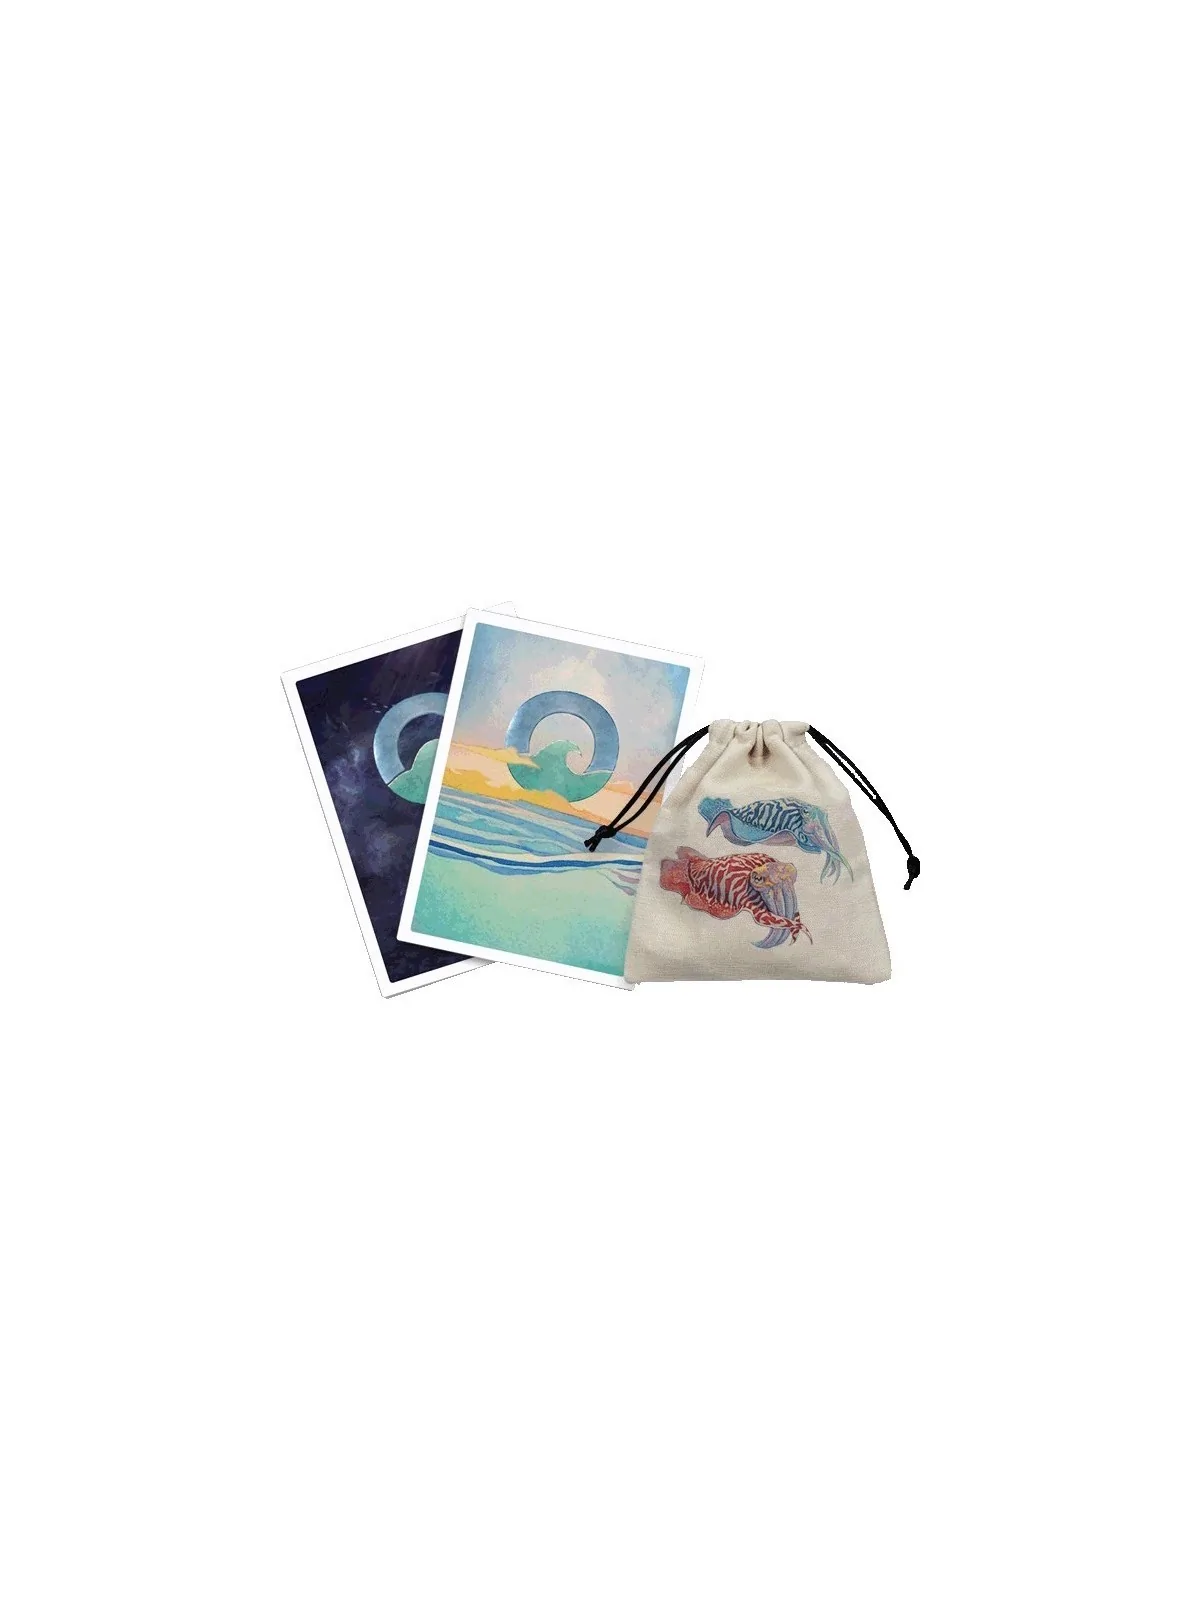 Comprar Oceans Deluxe + Pack de Cartas Exclusivas de Abismo barato al 